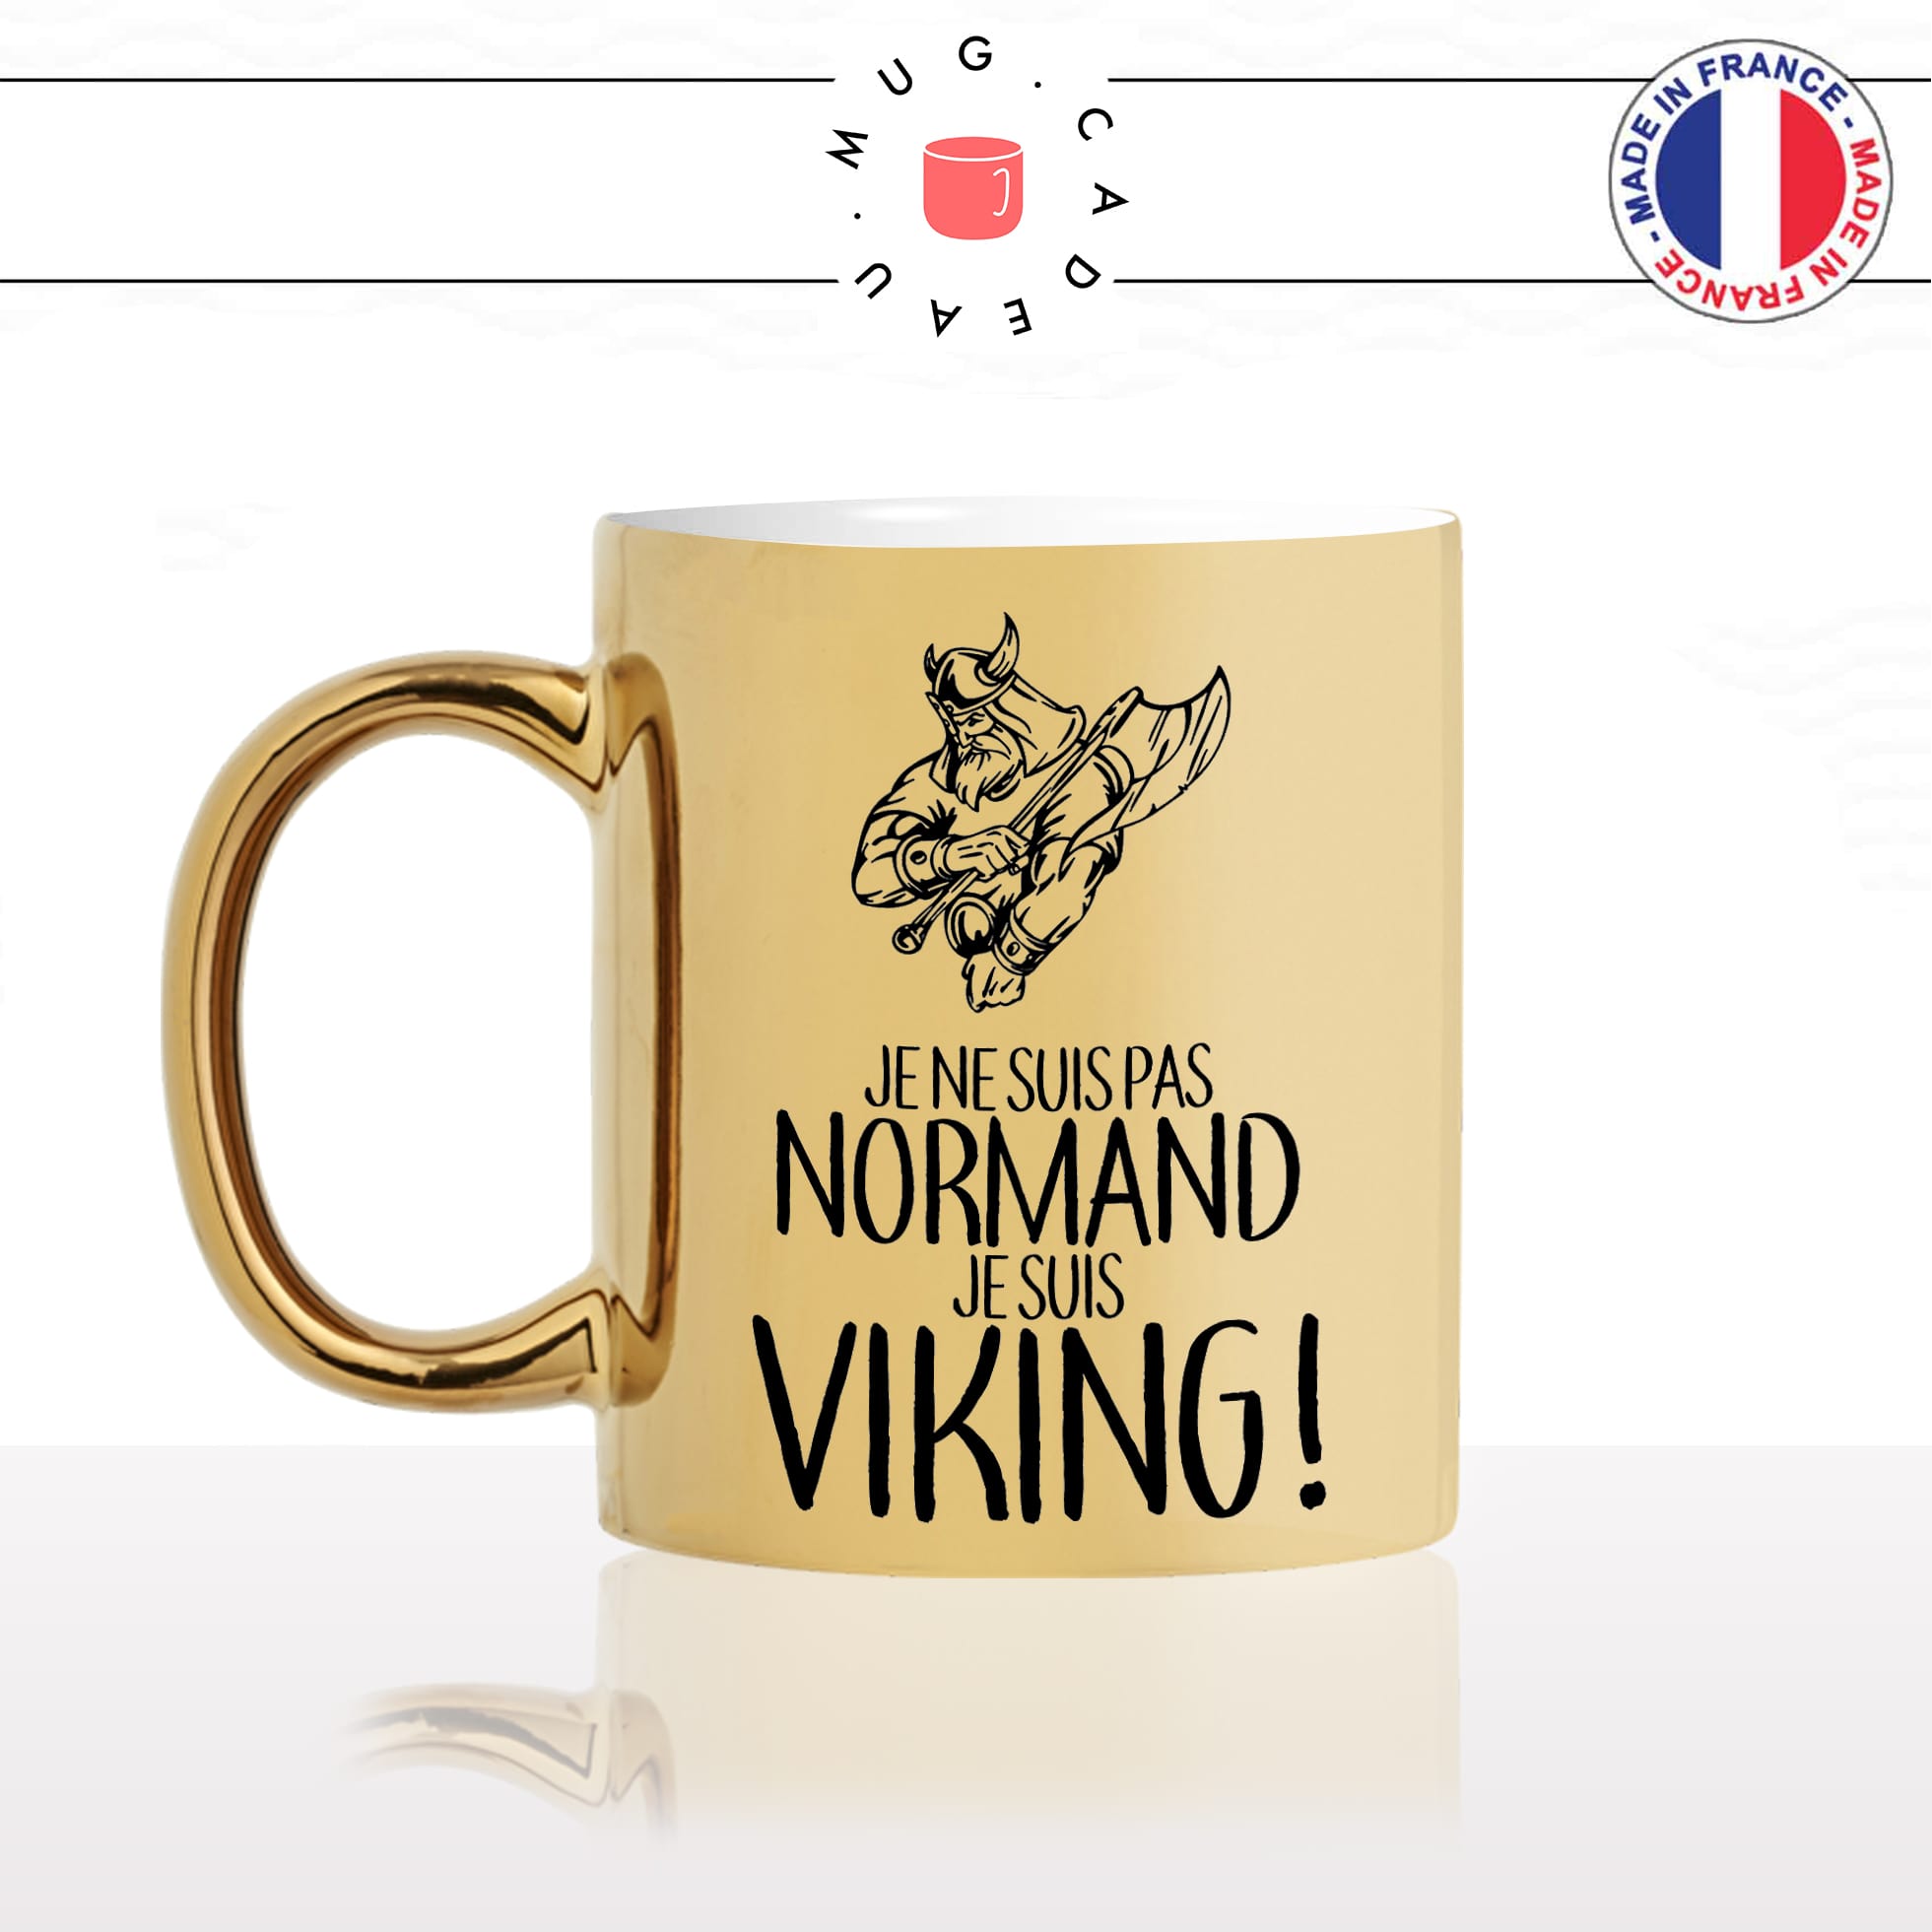 mug-tasse-or-gold-doré-je-suis-pas-norùand-je-suis-viking-normandie-série-nord-france-suede-fun-idée-cadeau-original-personnalisé-café-thé-min